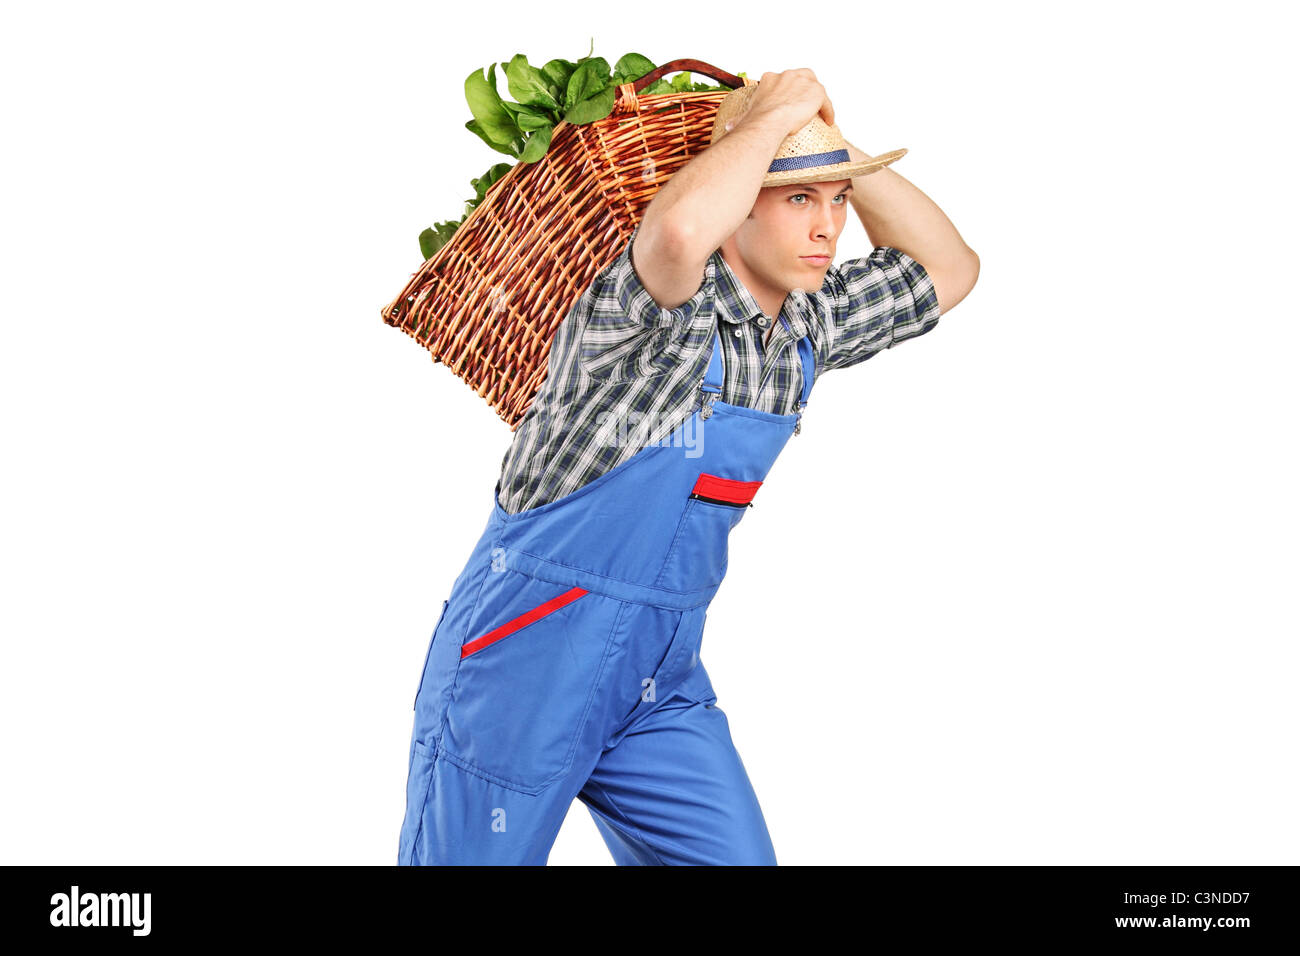 Landwirt ein Korb voll mit Gemüse auf dem Rücken Stockfoto